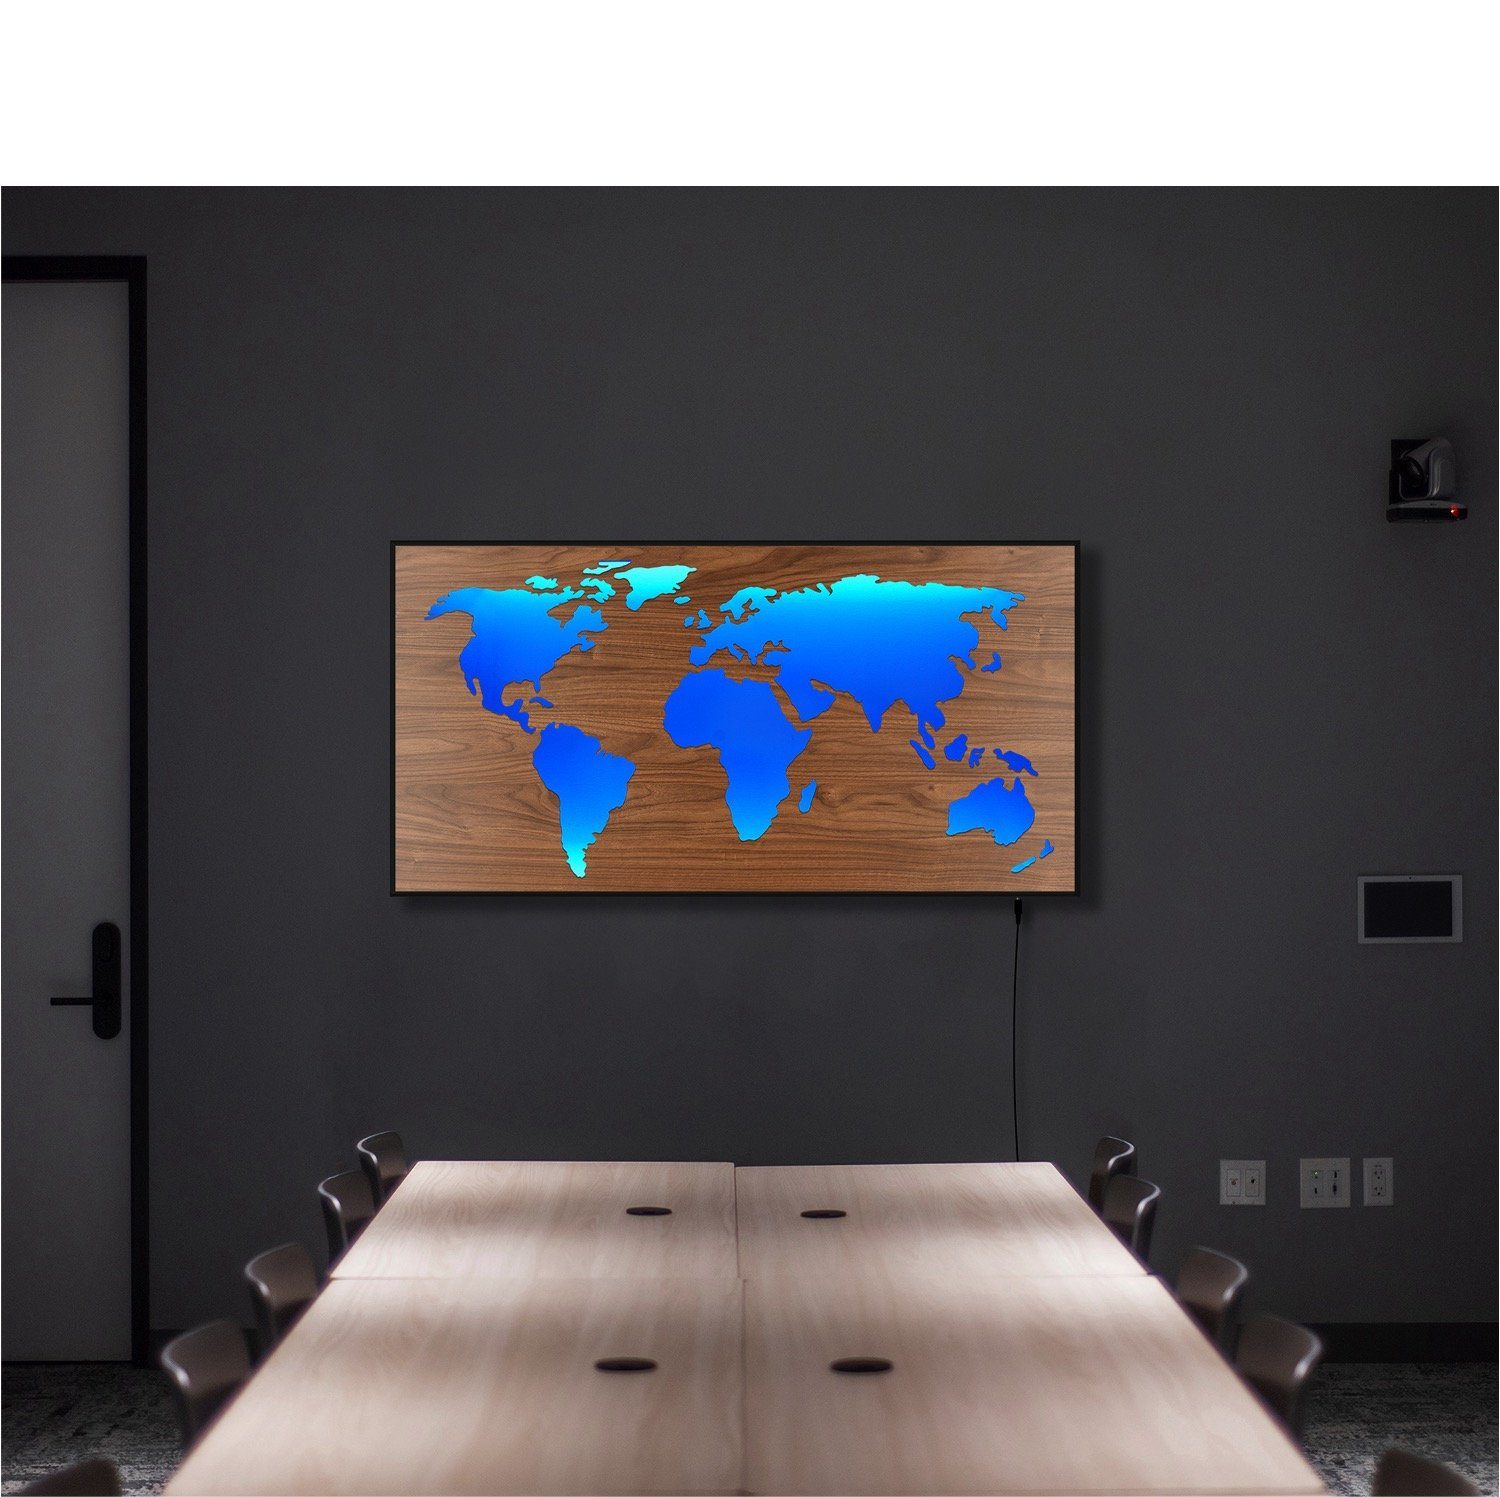 110x57cm LEDs HOLZ-Optik mit steuerbaren Optik hinterleuchtet Holzplatte MASCHERA Fernbedienung 3D-Effekt, ZENLED Braun über Walnuss ALU-Rahmen Maske - Wanddekoobjekt RGB in bunt Vintage Weltkarte